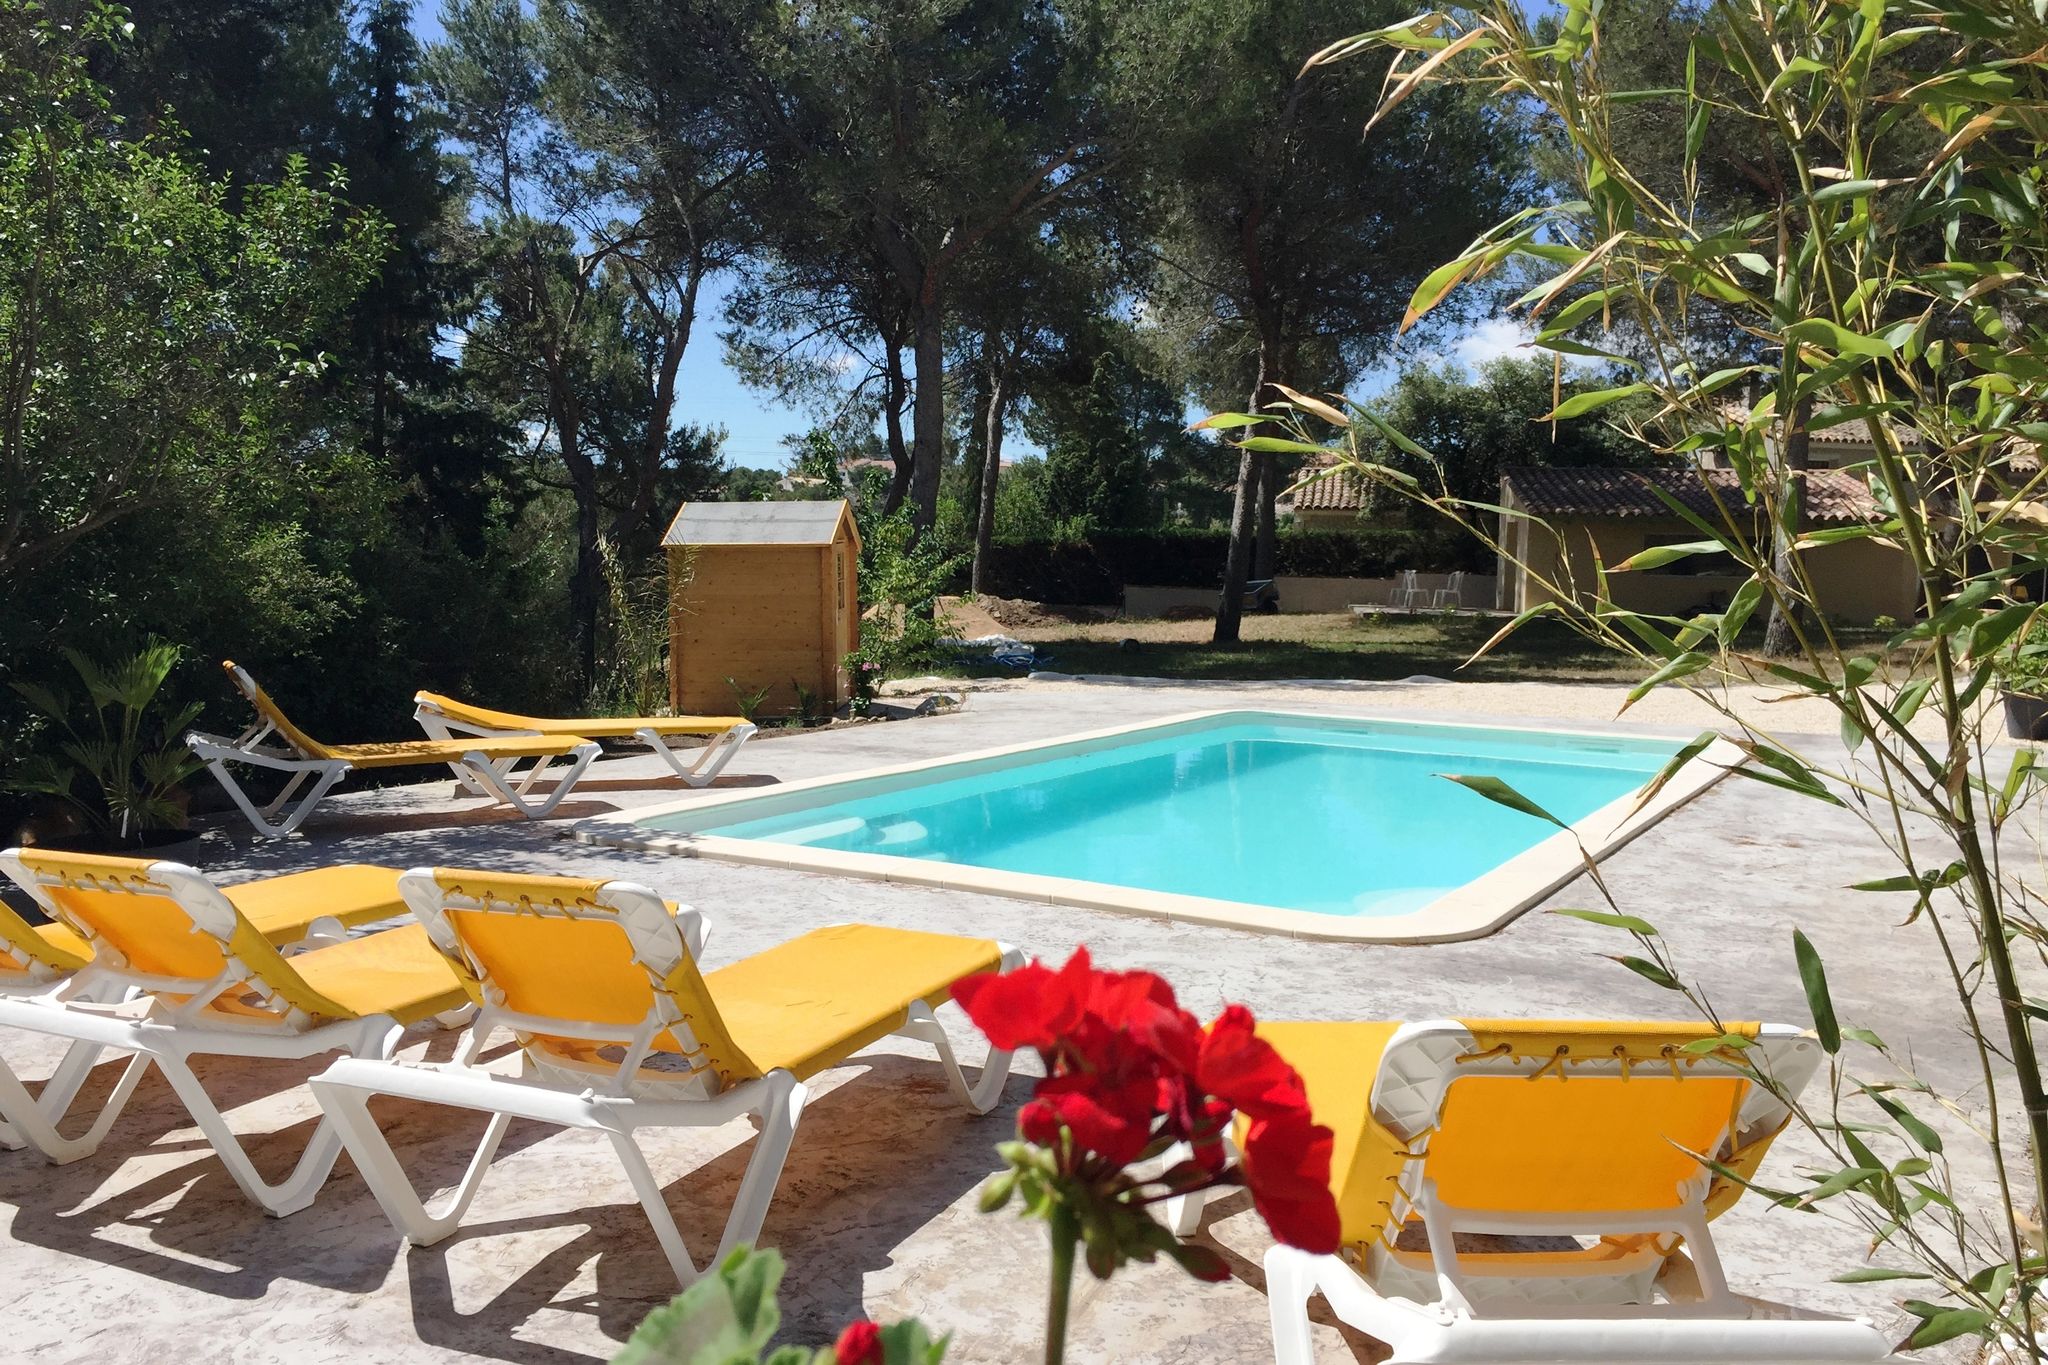 Paisible villa à Beaucaire au sud de la France, avec piscine